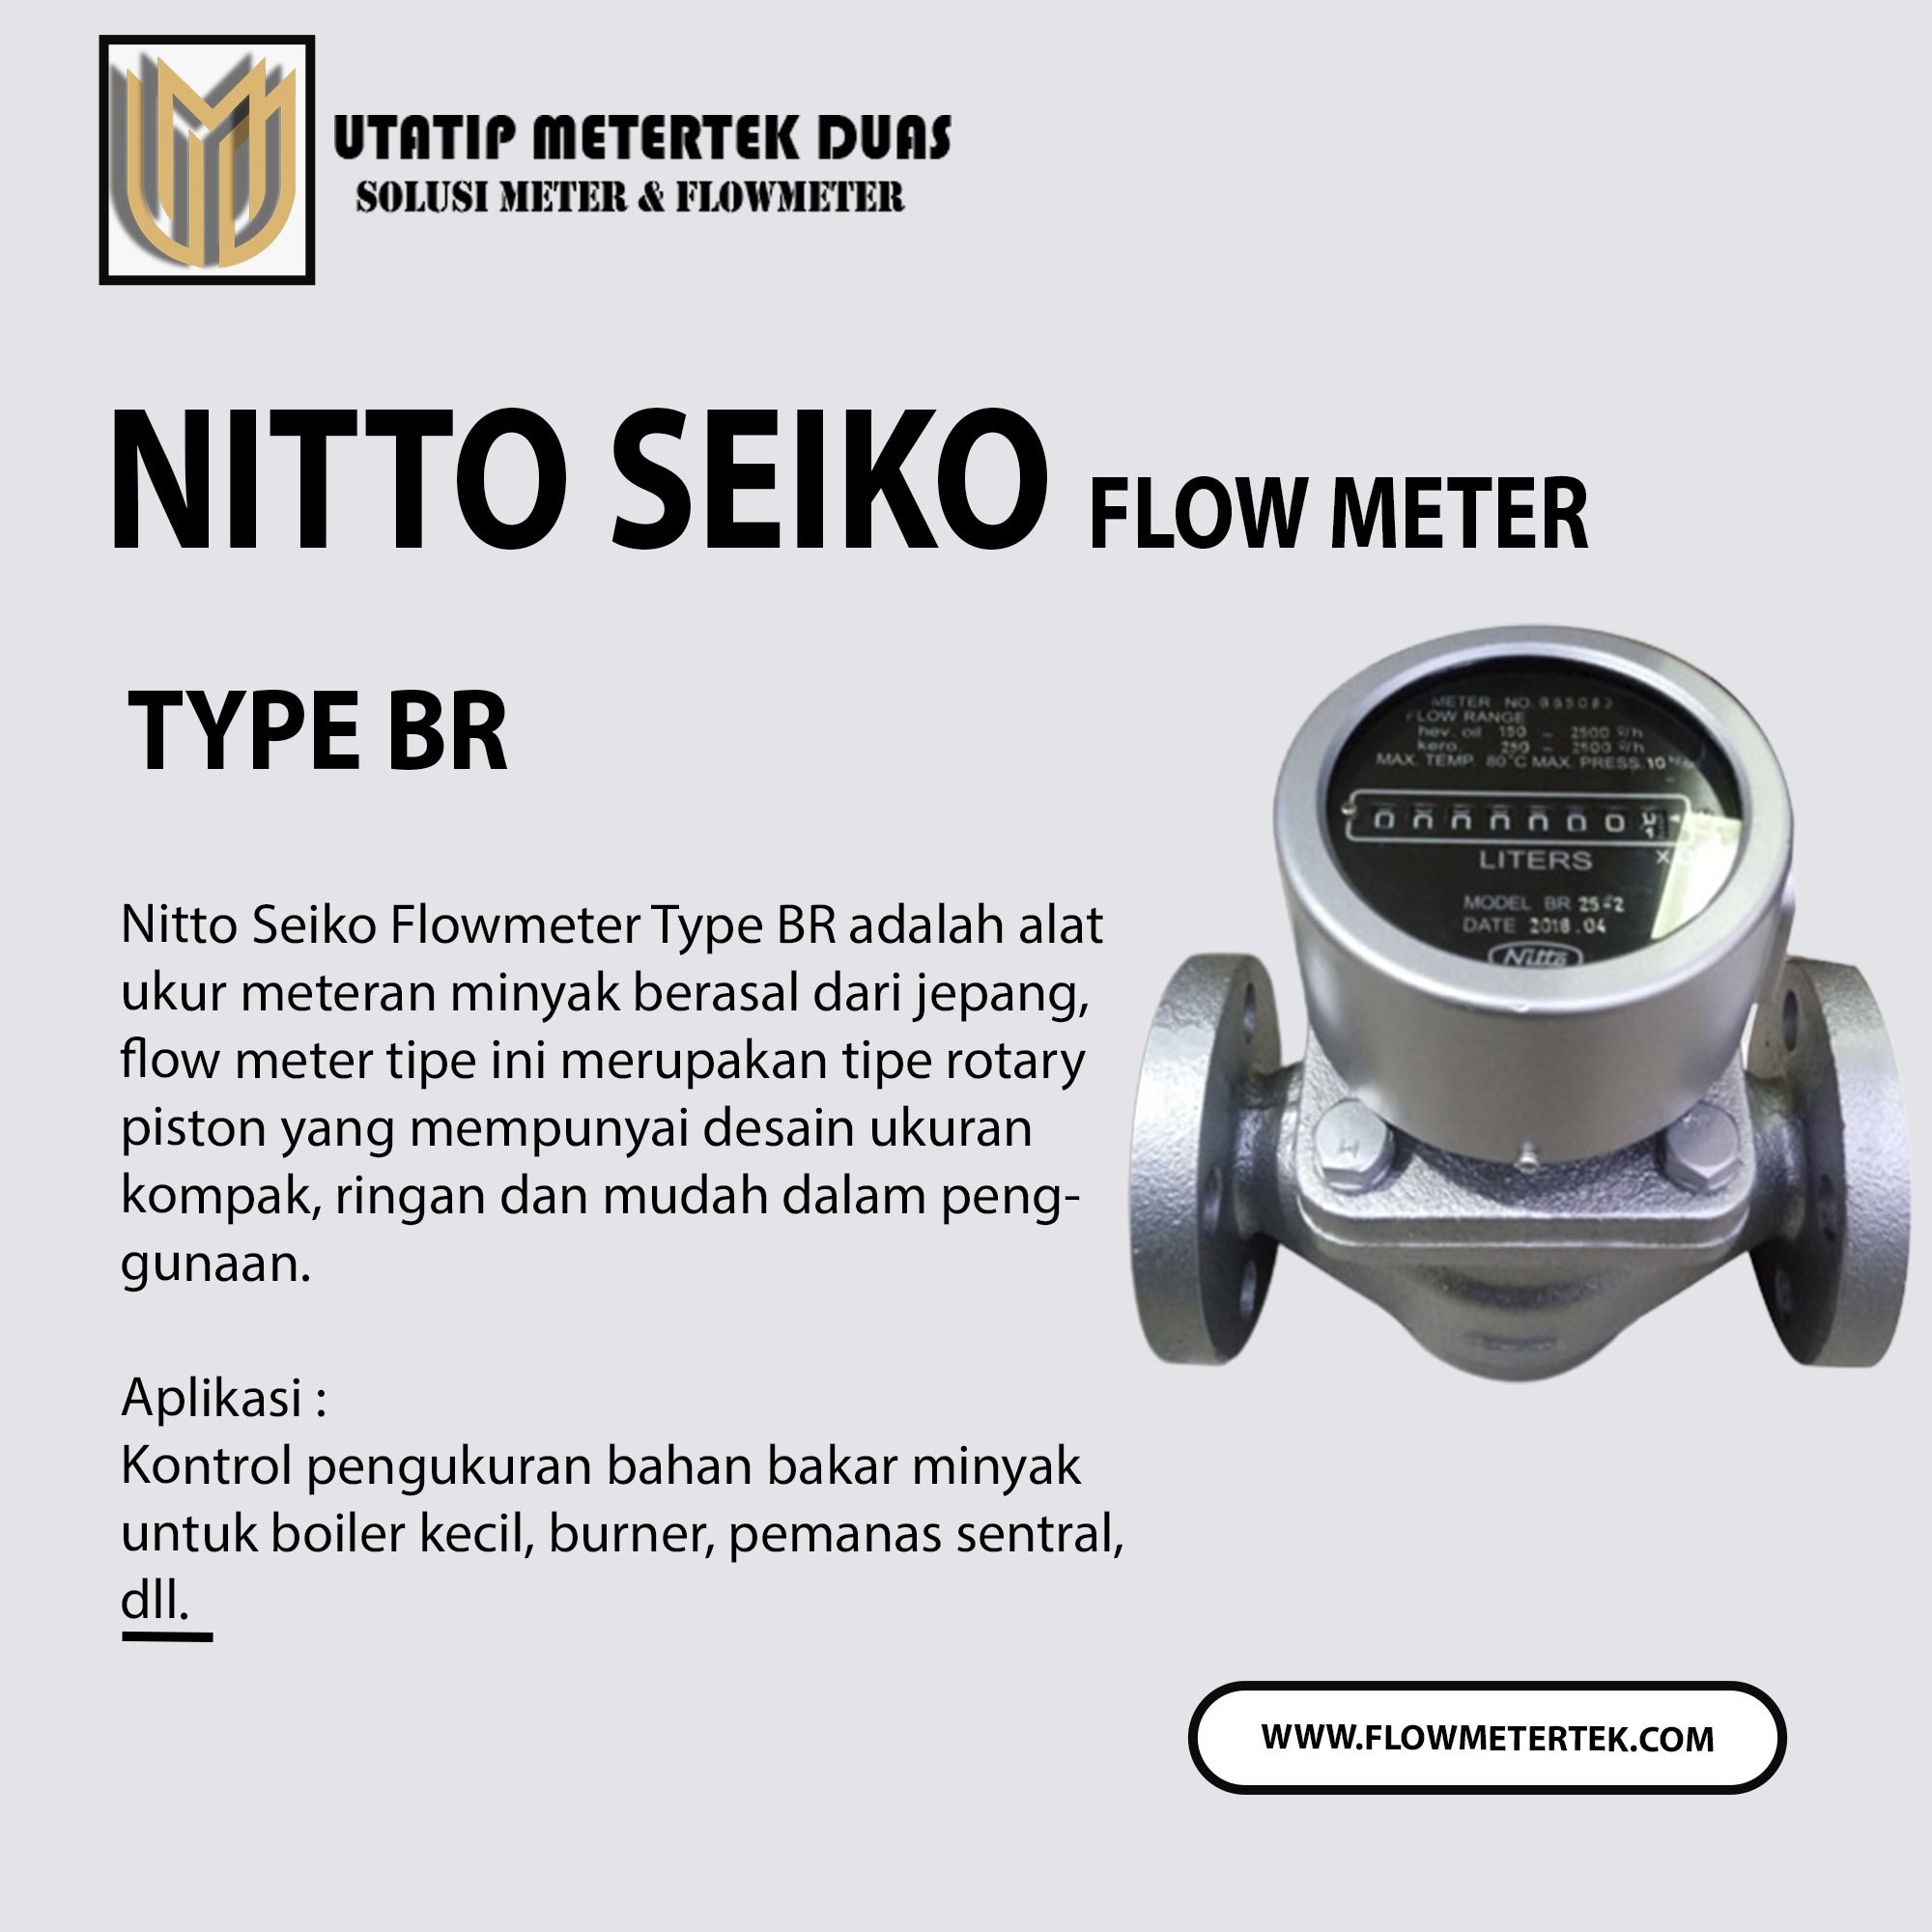 Nitto Seiko Flow Meter Type BR